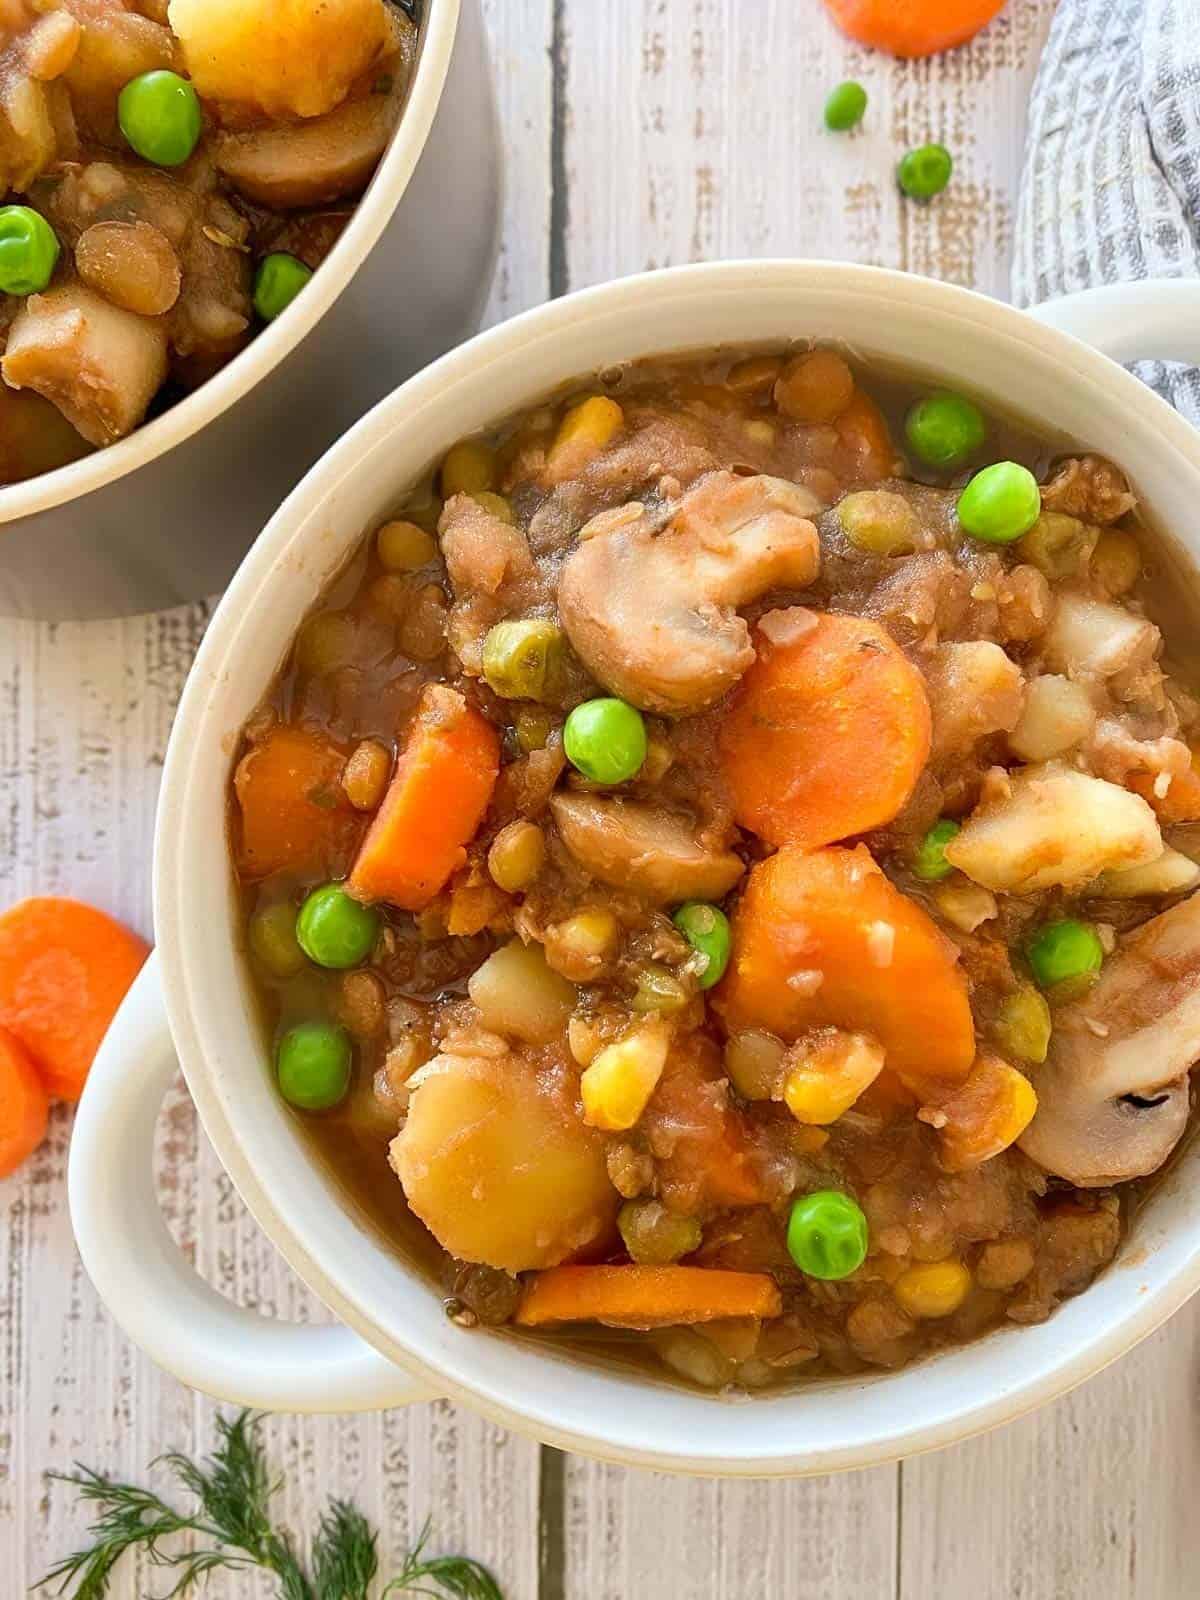 Bowl of vegan stew.